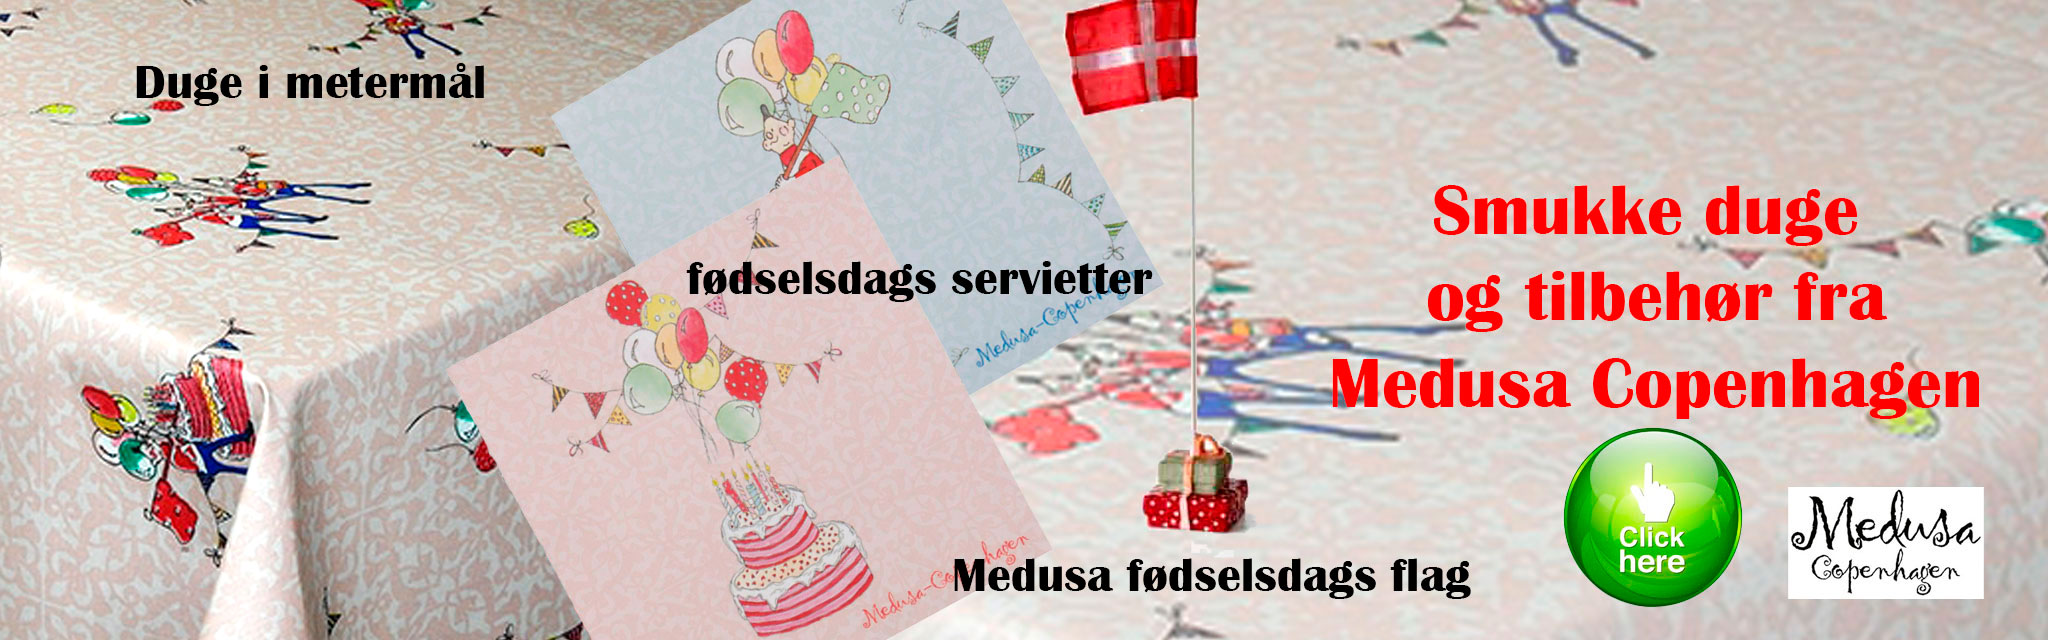 medusa-banner